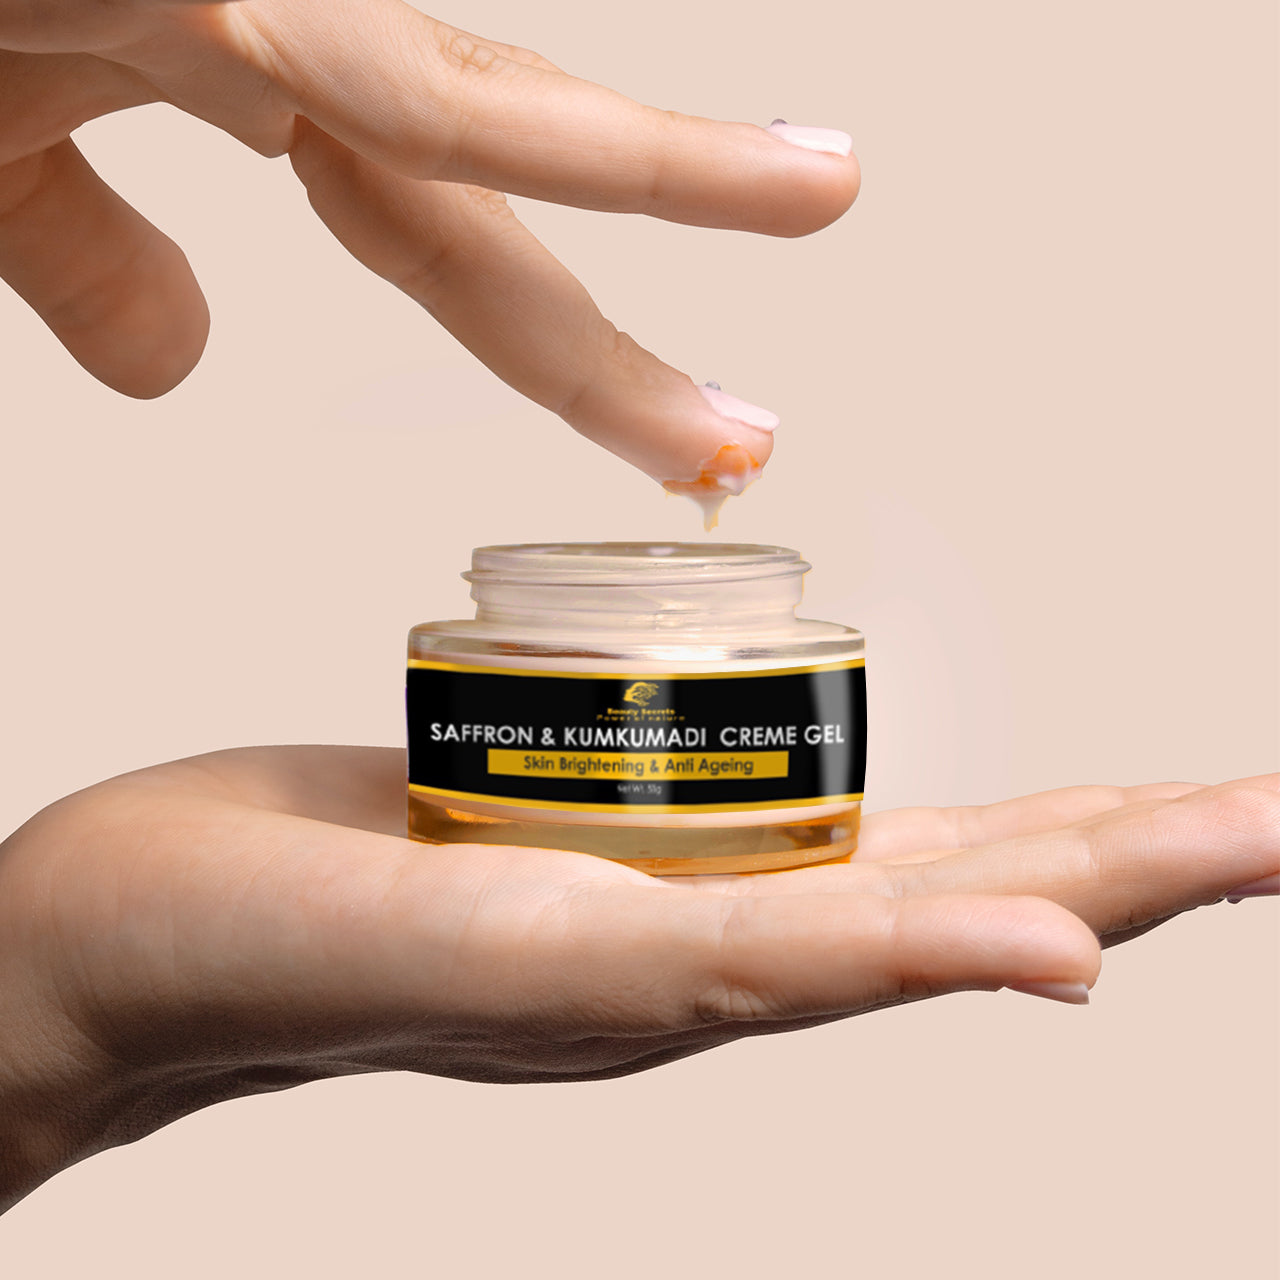 Saffron and Kumkumadi Crème-gel Repair & Restore Your Skin Naturally!